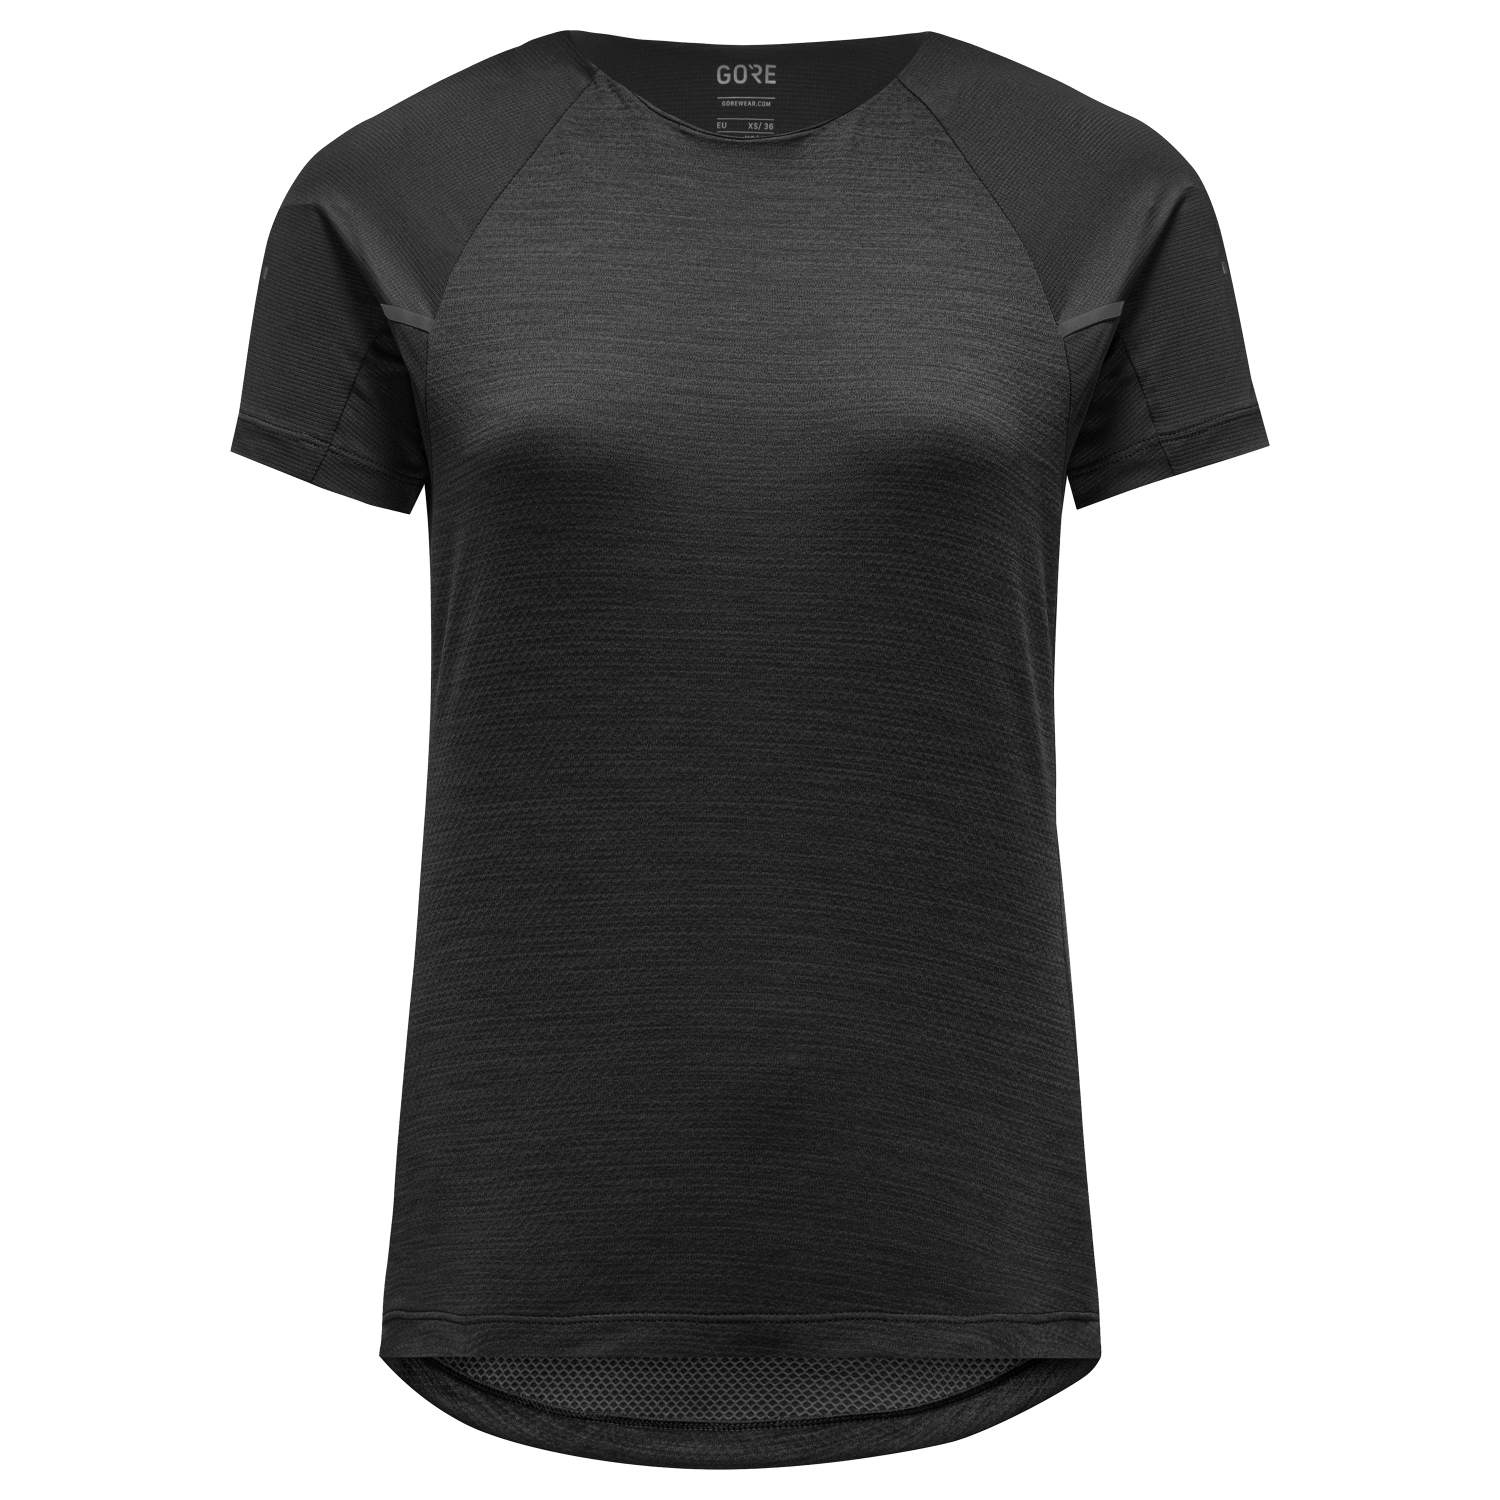 GOREWEAR Vivid Running Shirt Women's in Black | Large (12-14) | Slim fit